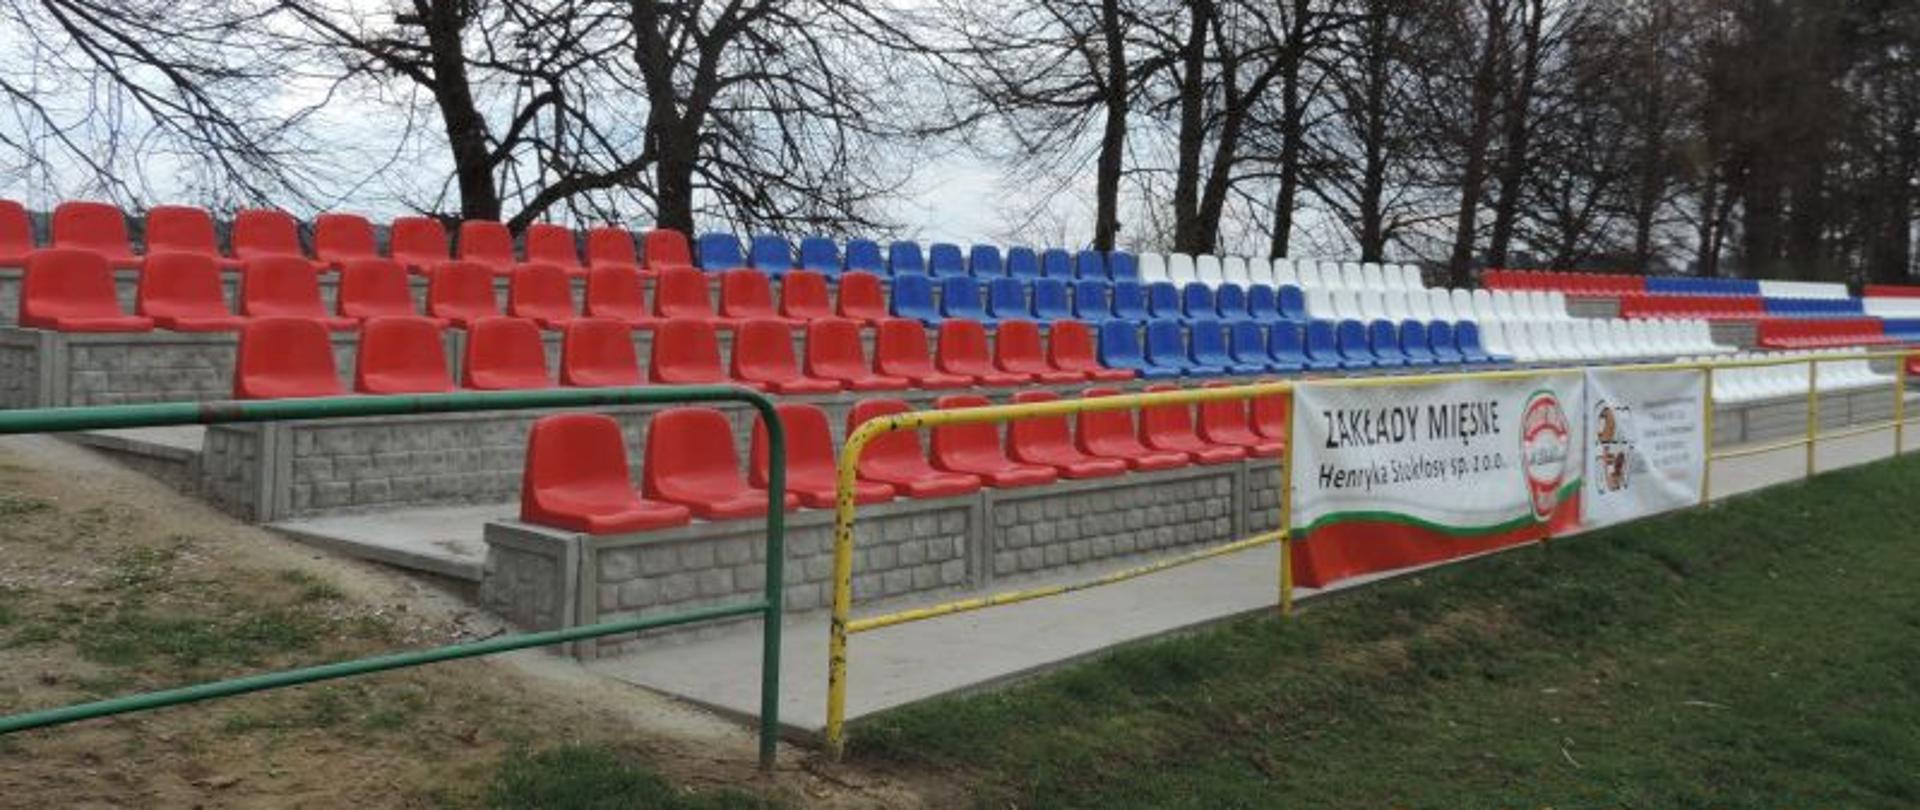 Nowe trybuny zdobią stadion sportowy w Kaczorach